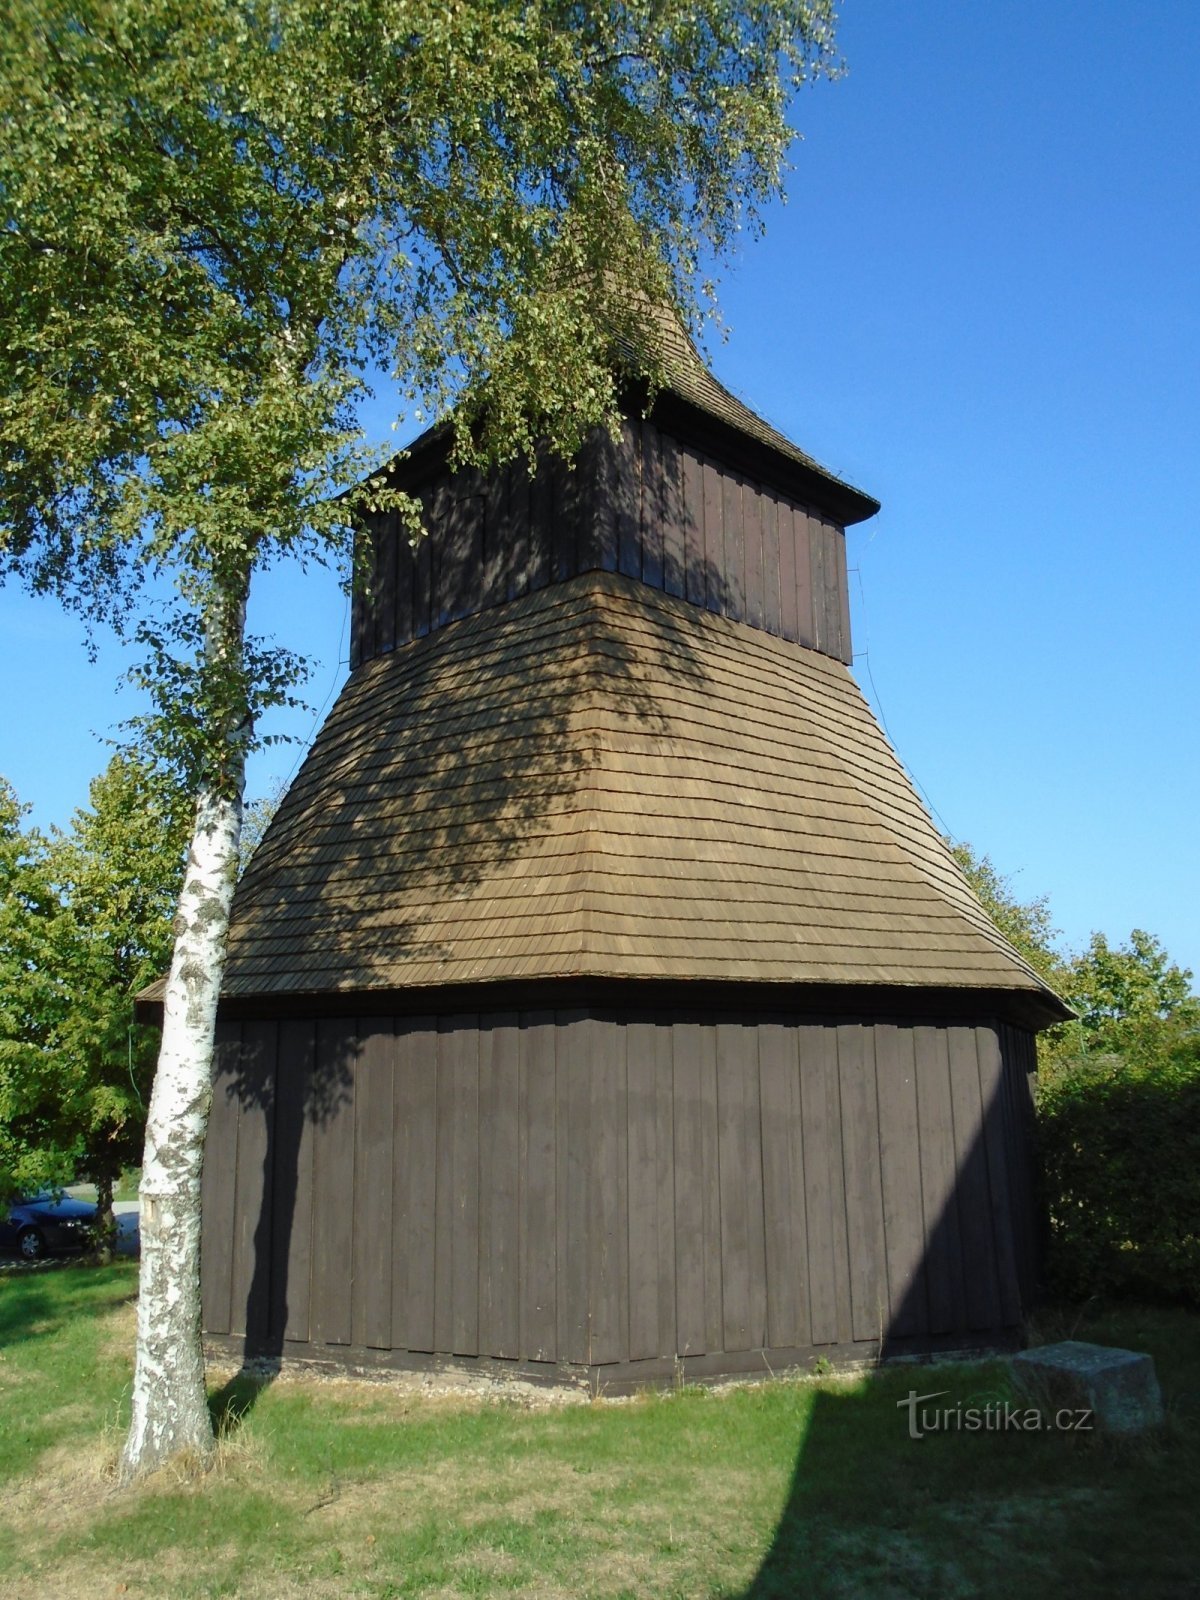 Zvonik pri cerkvi sv. Vaclava in sv. Stanislava (Měník)